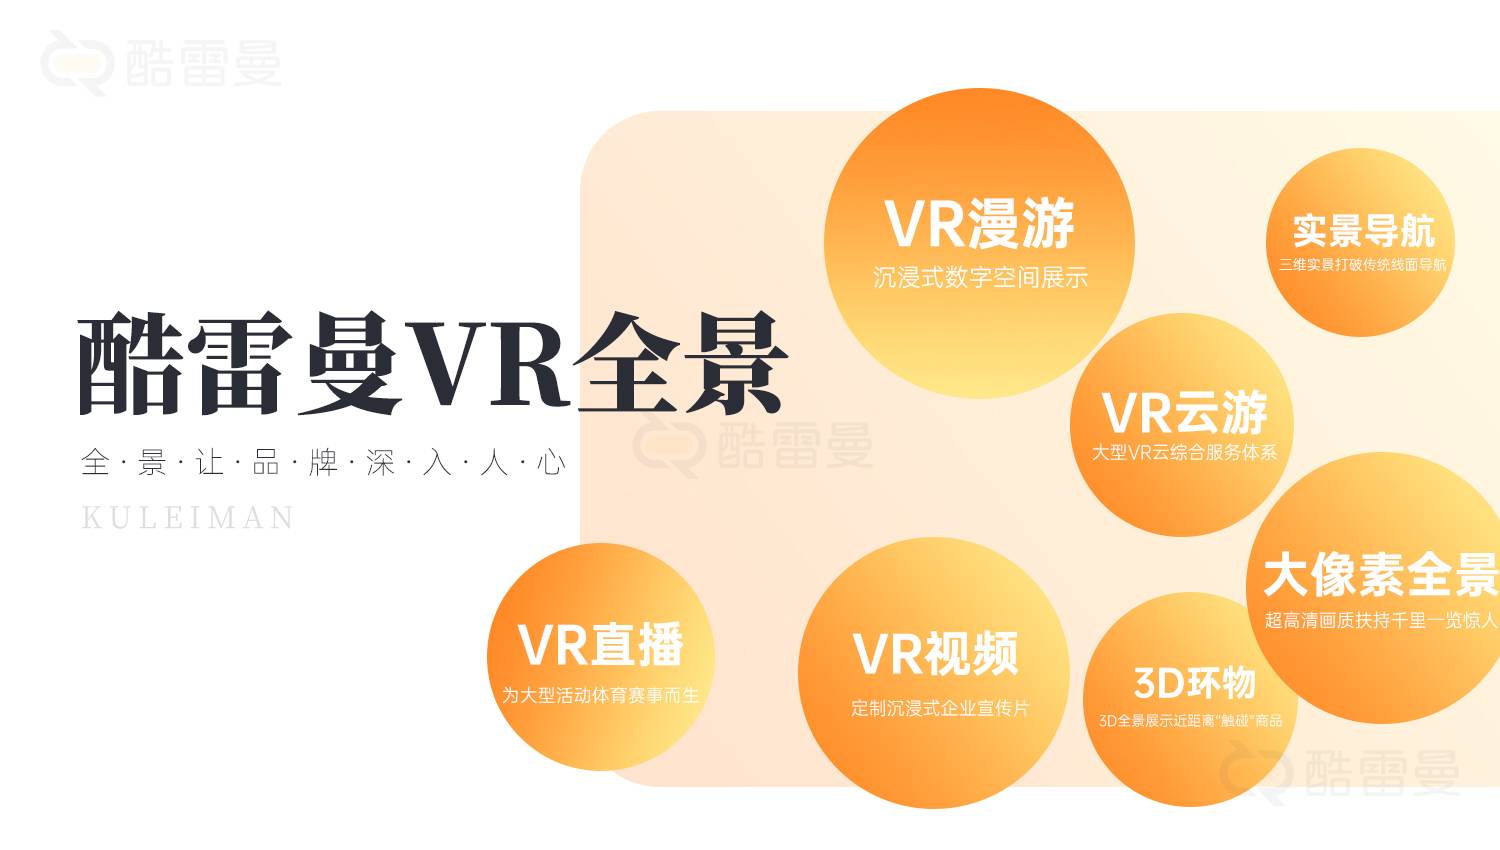 5G+VR慢直播，带来沉浸式VR直播体验